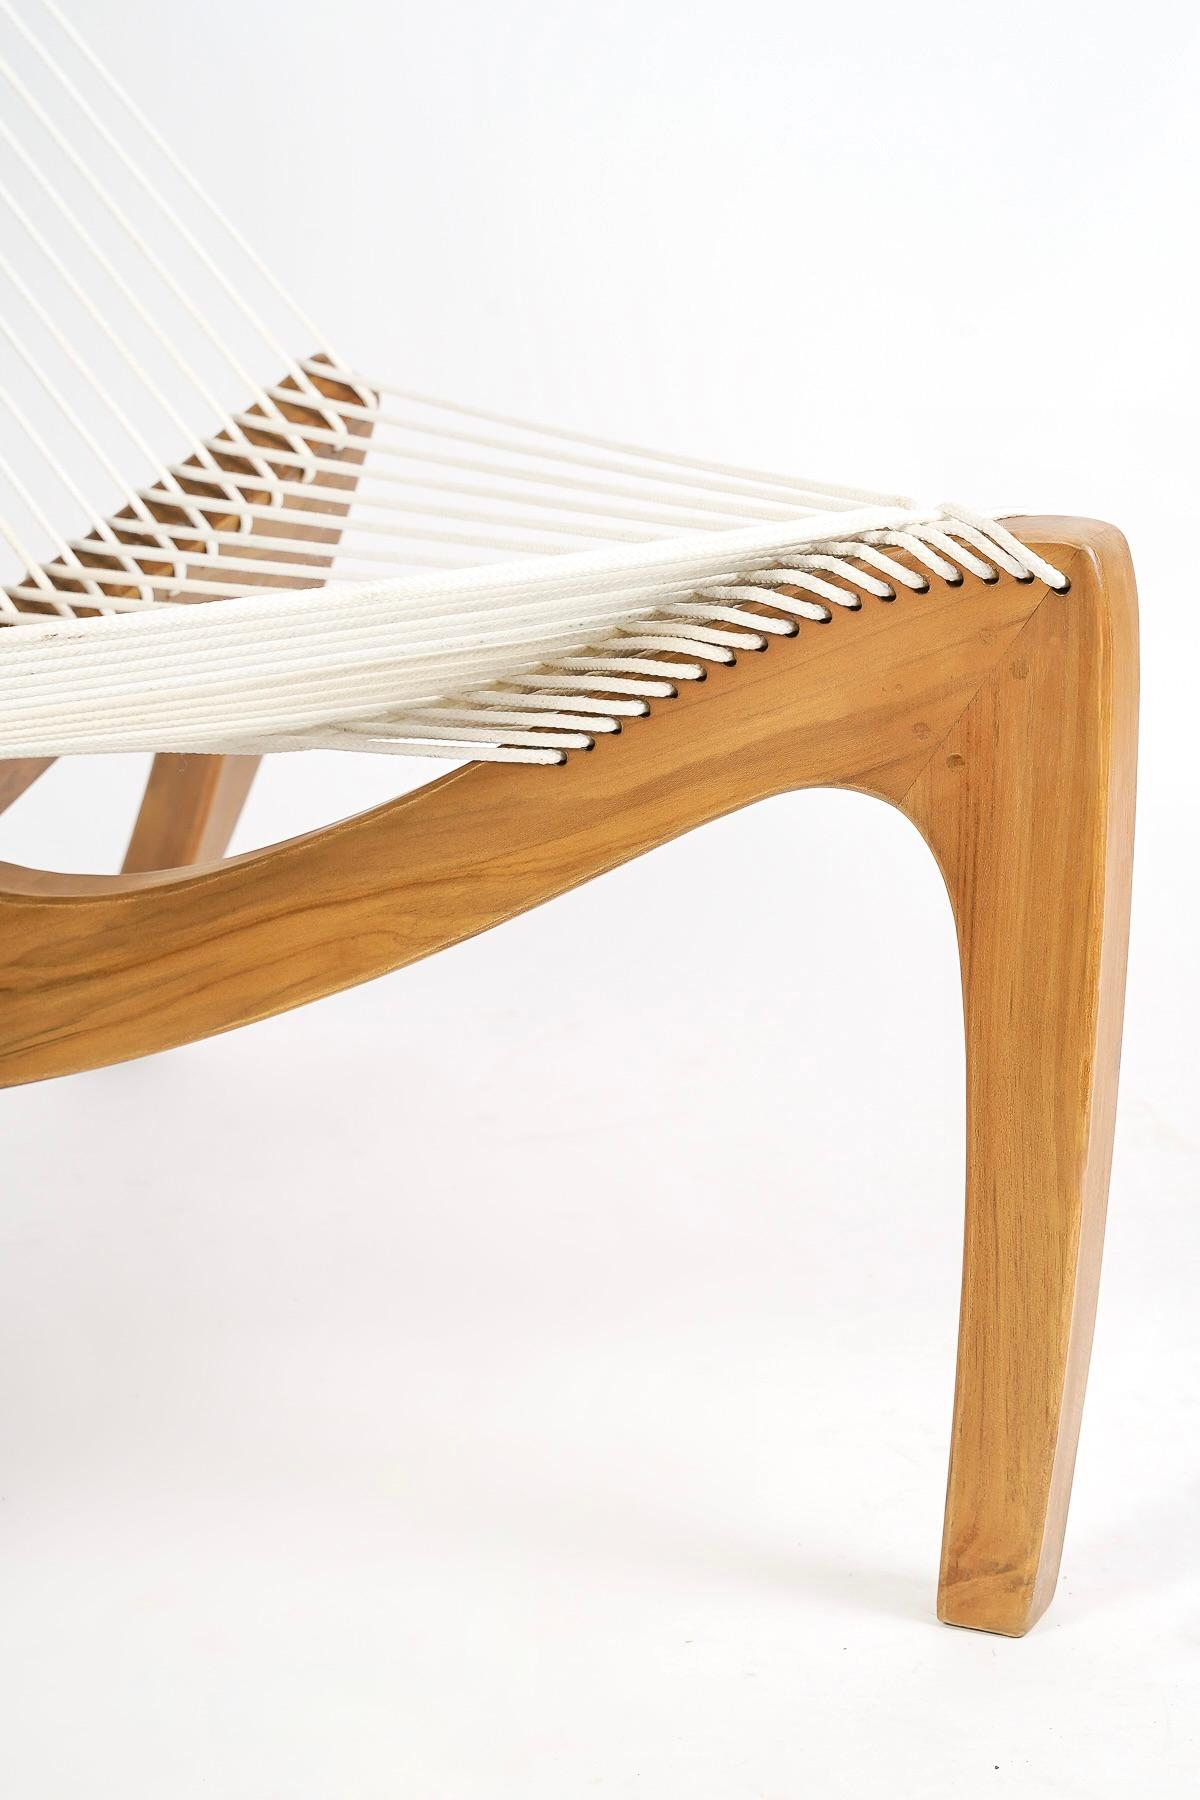 1970 Pair harp chair by Jørgen Høvelskov for Christensen & Larsen Møbelhandværk. 4